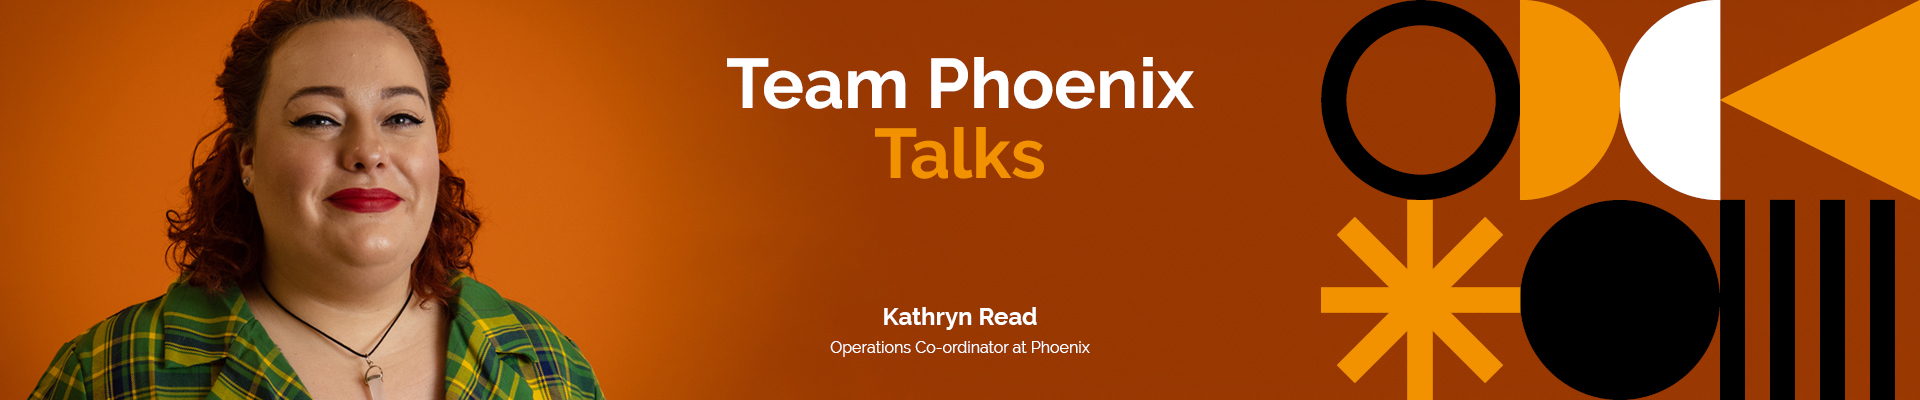 Team Phoenix Talks: Kathryn Read